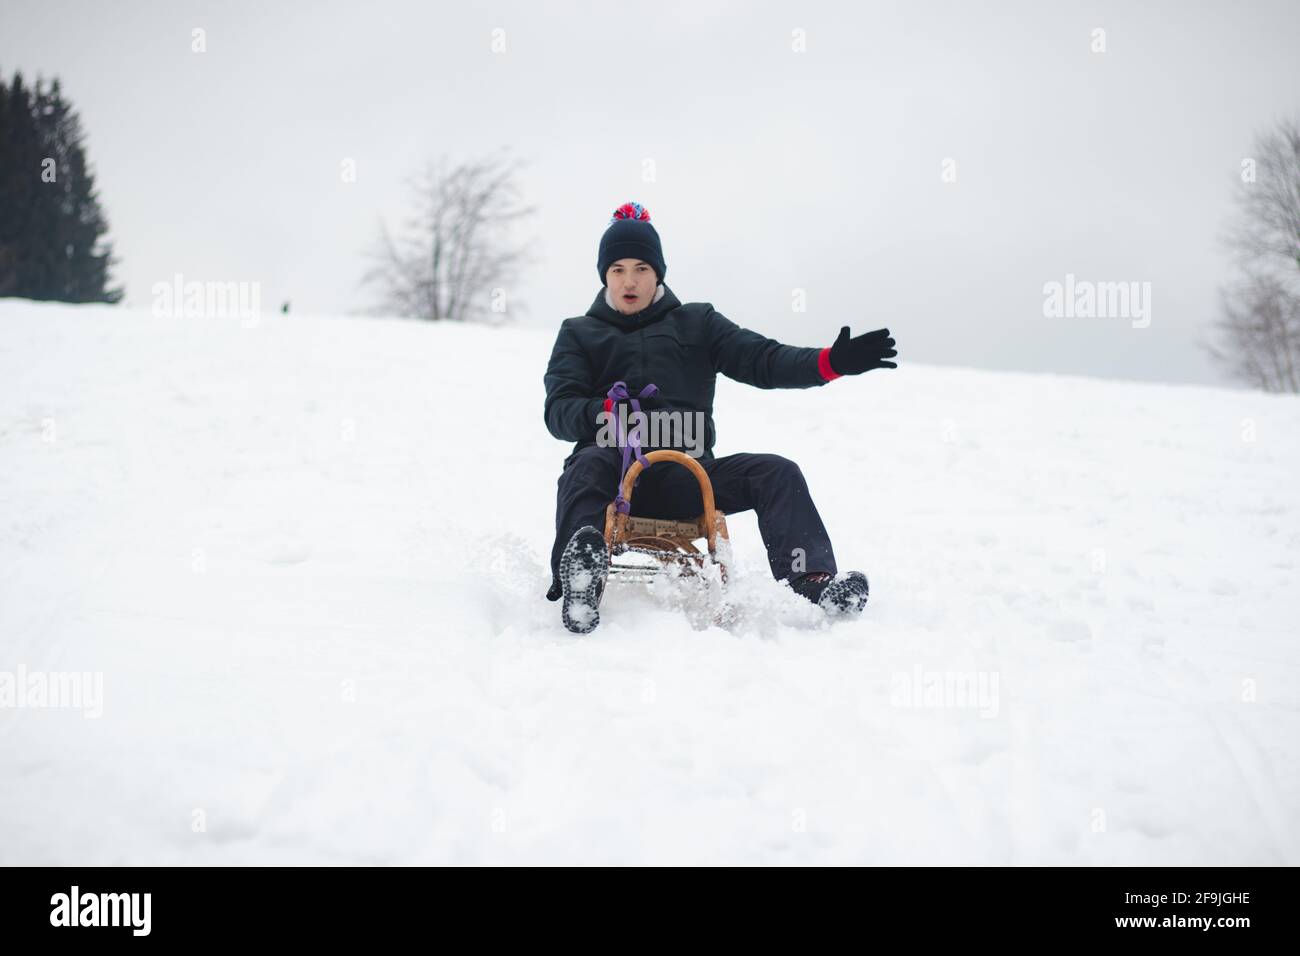 Erwachsener Mann in winterlicher schwarzer Kleidung genießt mit einem Lächeln eine Fahrt auf einem Holzschlitten und versucht nicht davon zu fallen. Fußbremsung. Verwendung von frischem Pulver für ein Stockfoto